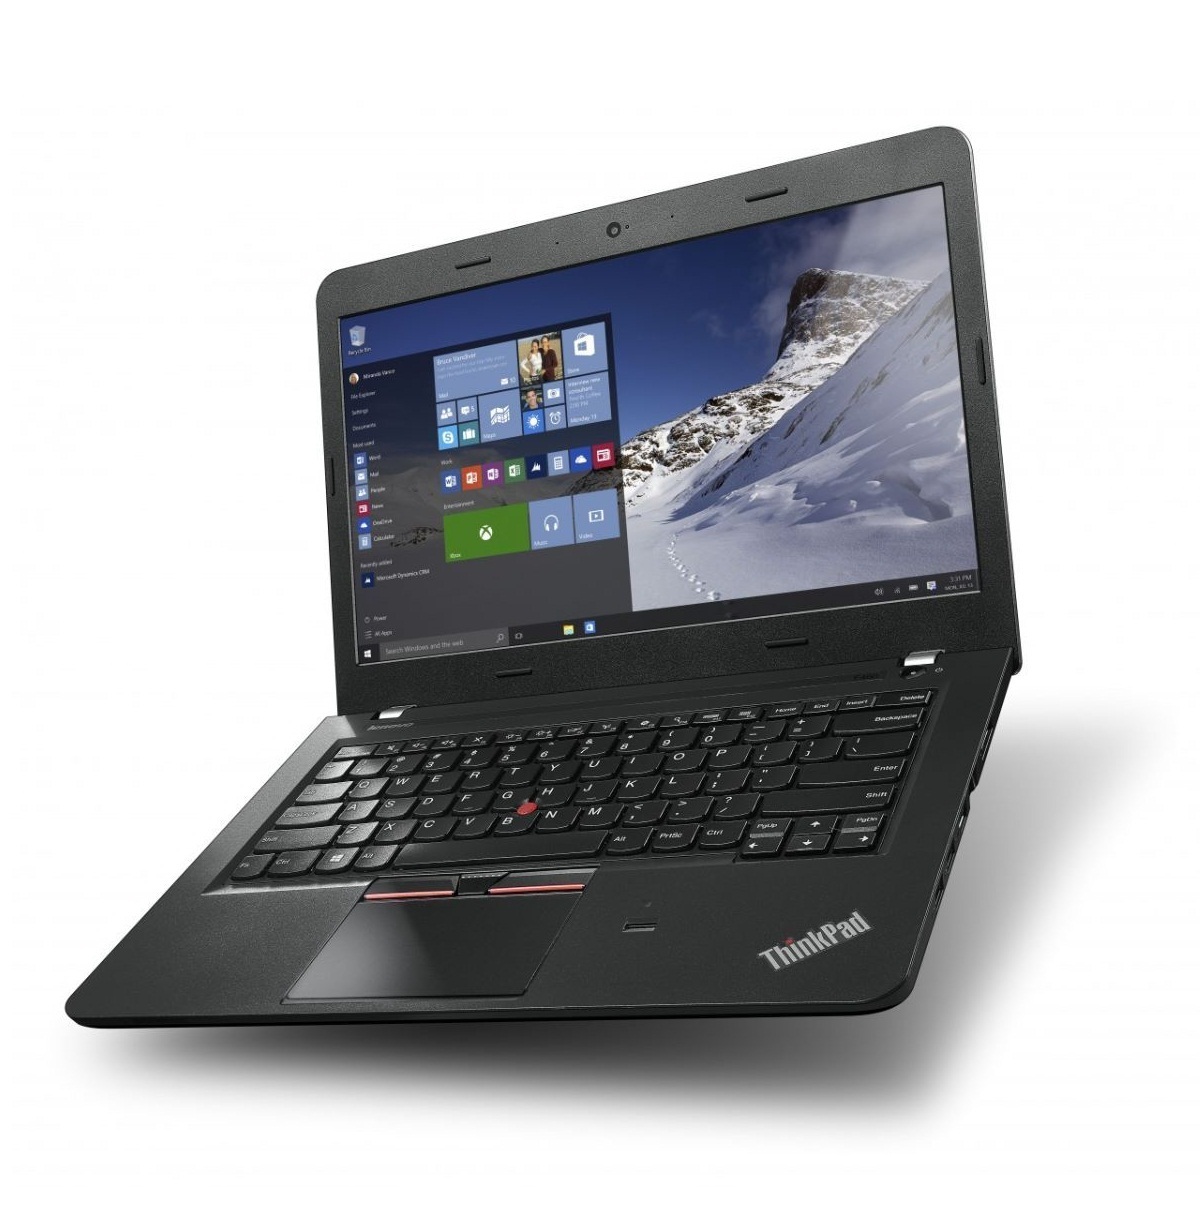 Laptop Lenovo Thinkpad E560 20EV000NVA (Black) - Intel Core i5-6200U, 4GB RAM, HDD 500GB, Intel HD Graphics 520, 15.6 inch